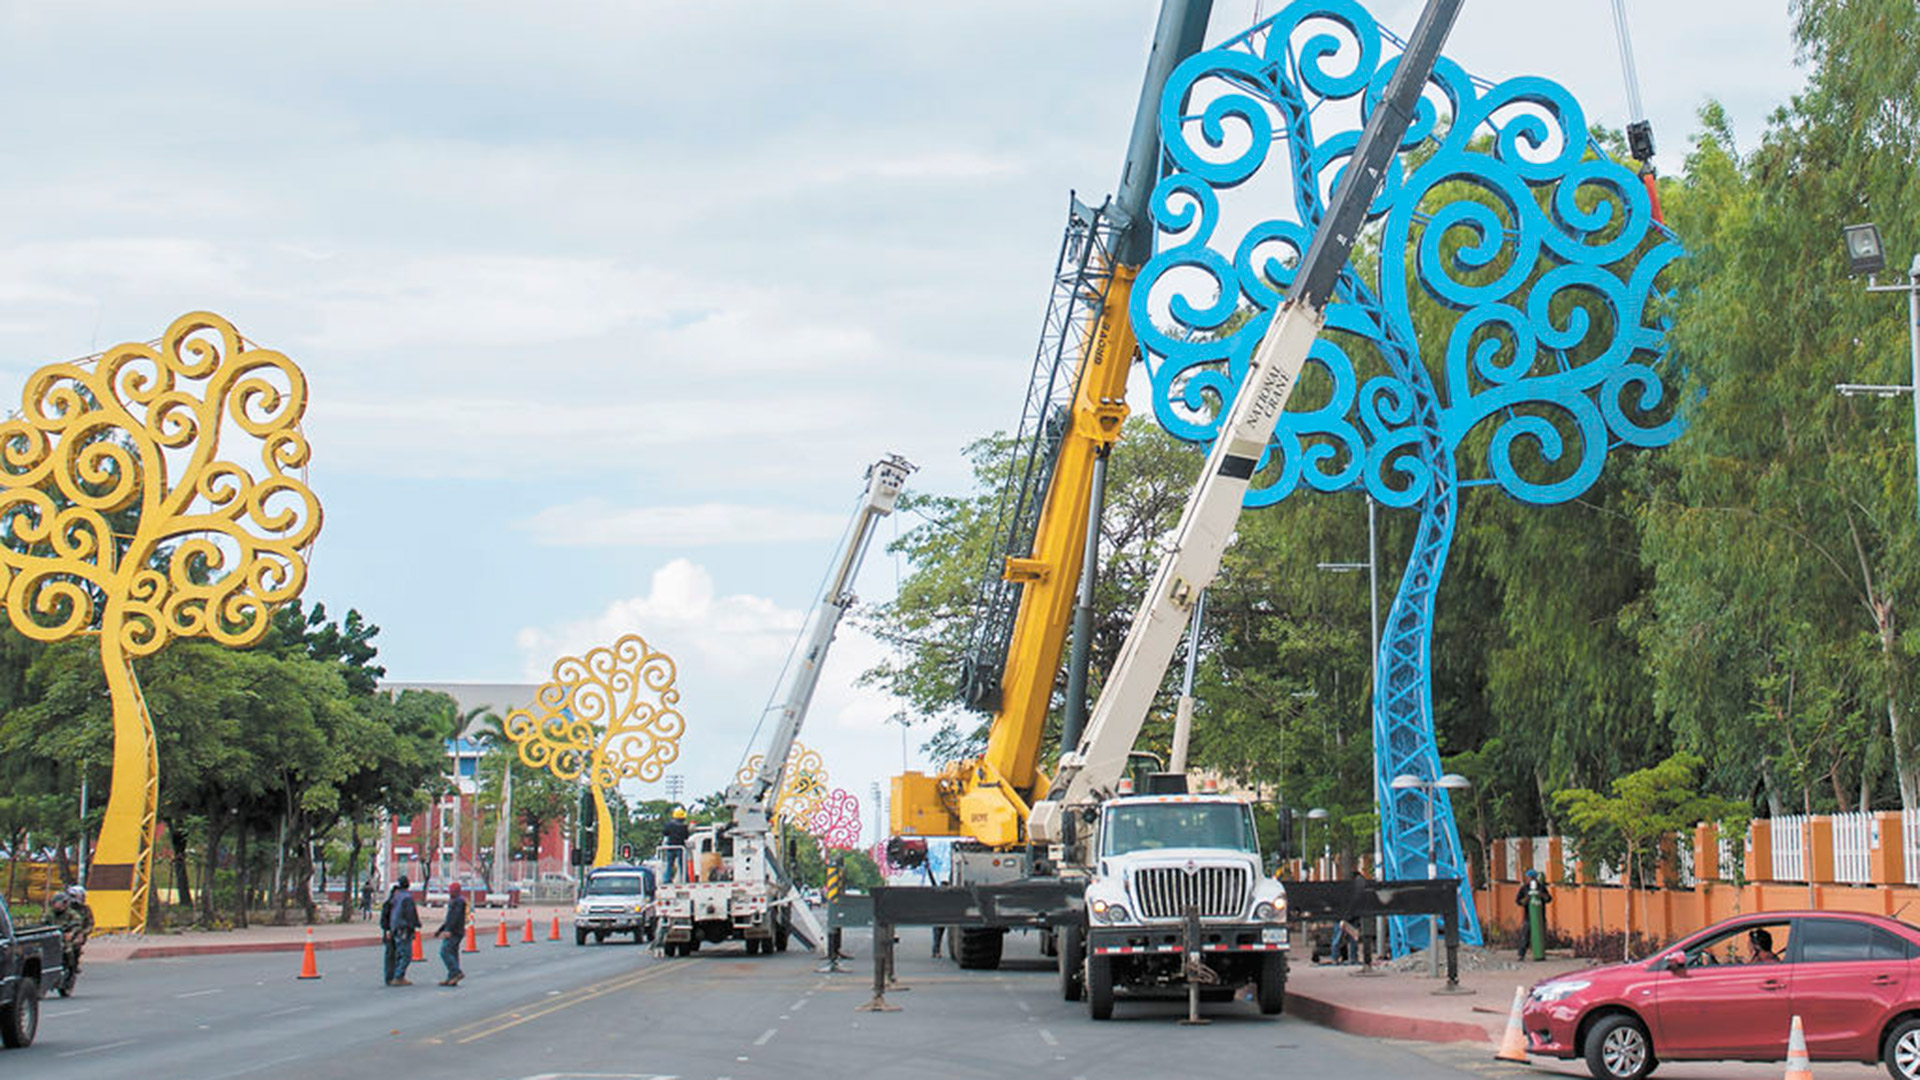 Por órdenes de Rosario Murillo. la esposa de Daniel Ortega, se levantaron en Nicaragua unos 140 gigantescos amuletos conocidos como "árboles de la vida". (Foto cortesía de La Prensa)